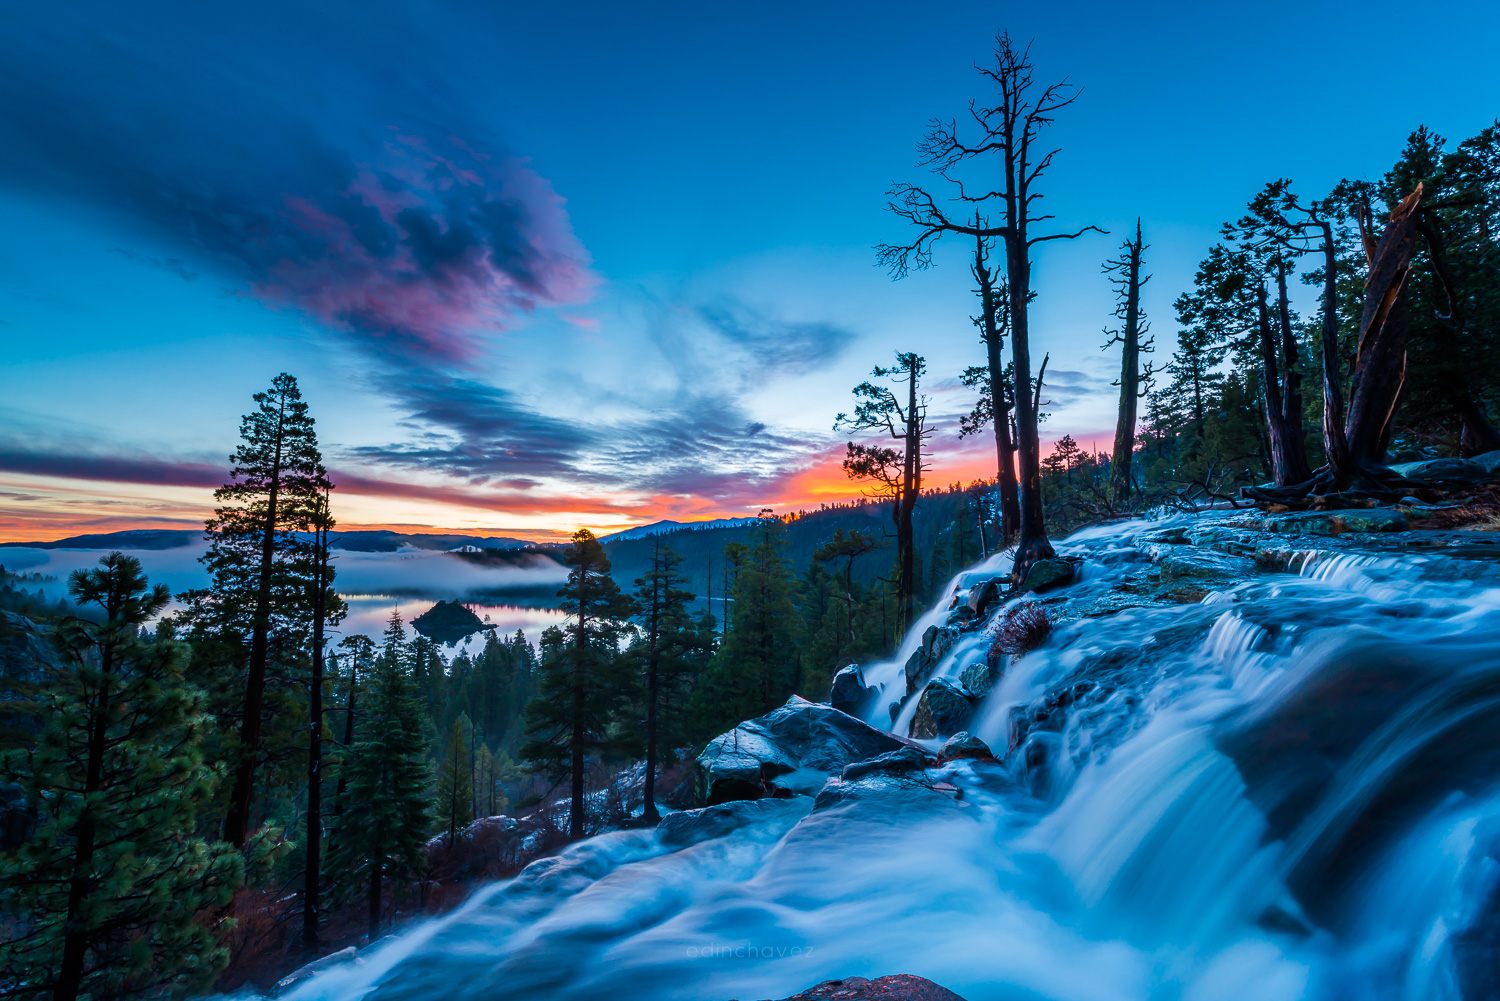 Eagle Falls Lake Tahoe at Sunrise